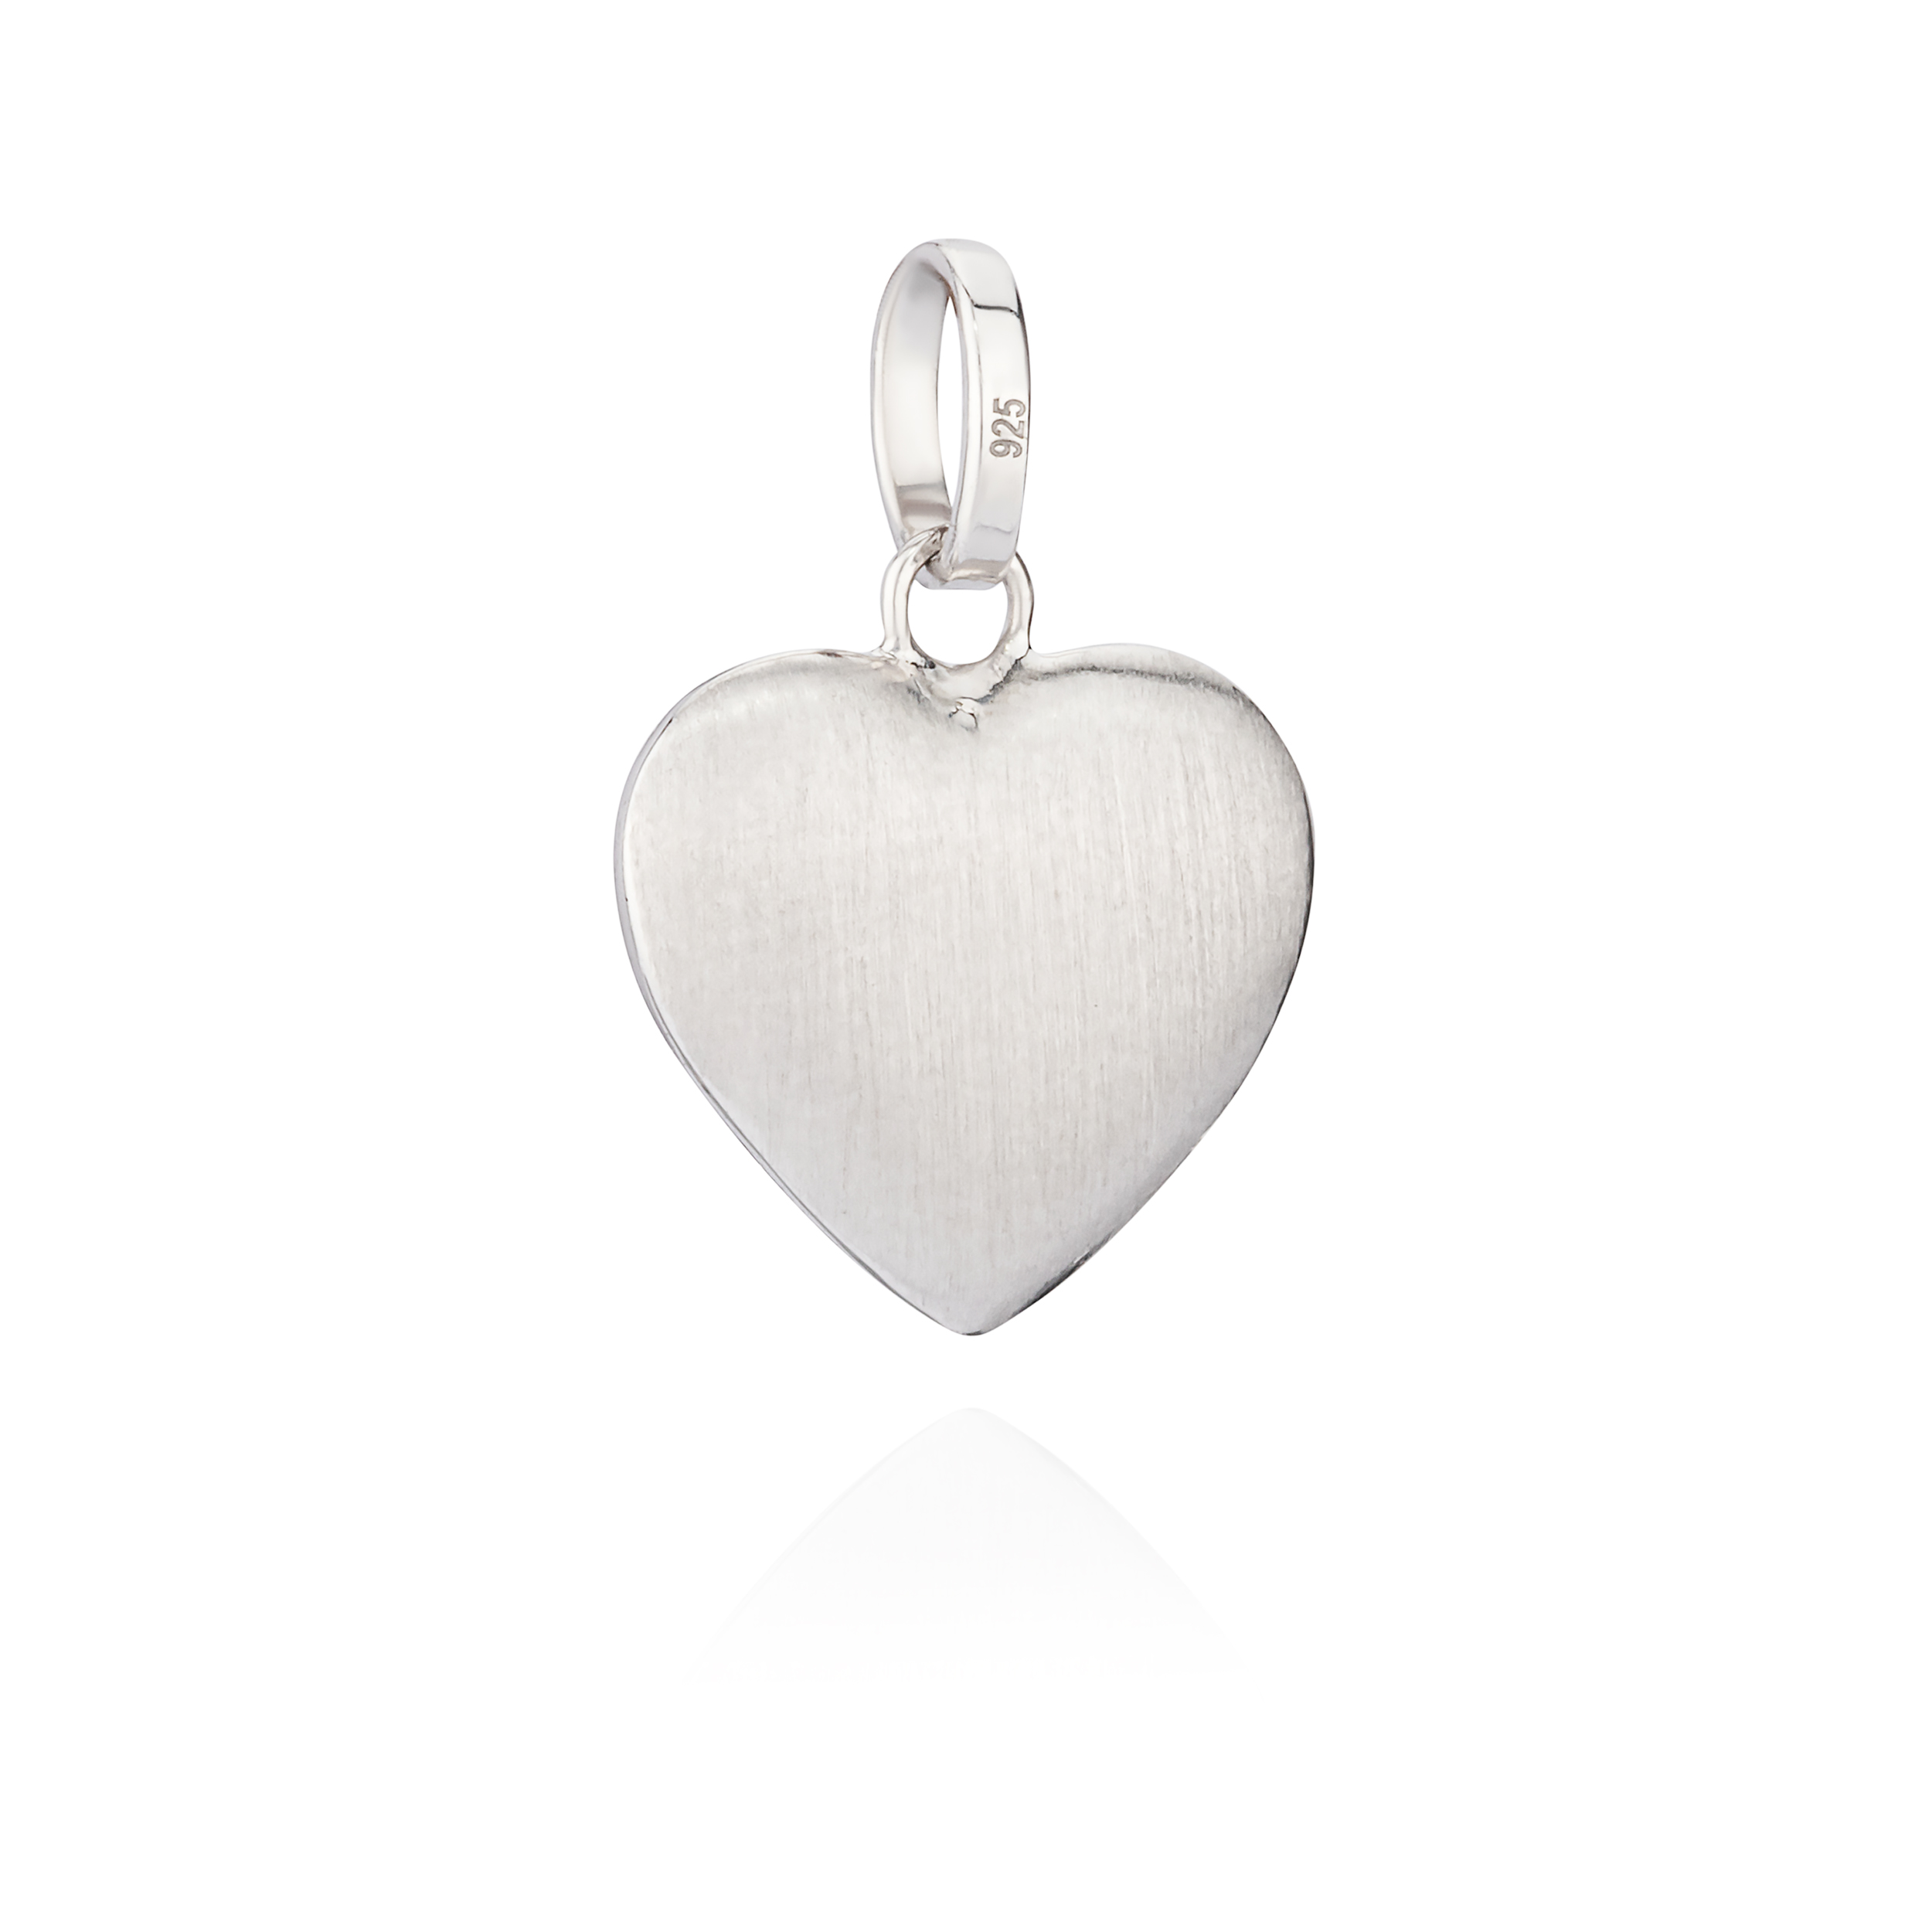 Kettenanhänger kleines Herz 925 Silber glanz-matt anlaufgeschützt Amulett |  eBay